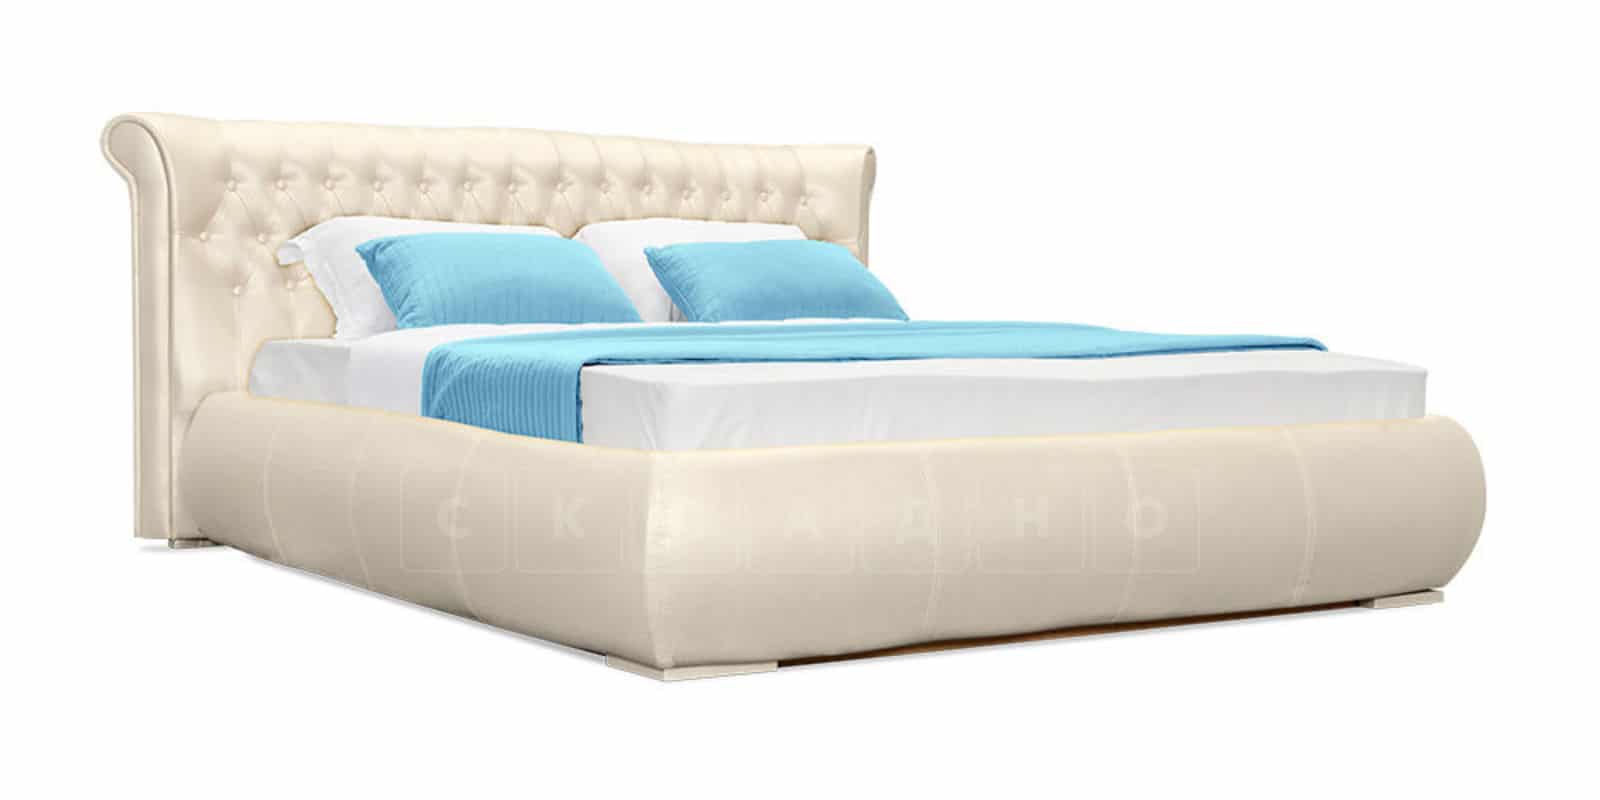 Мягкая кровать Вирджиния 160см экокожа перламутрового цвета фото 2 | интернет-магазин Складно